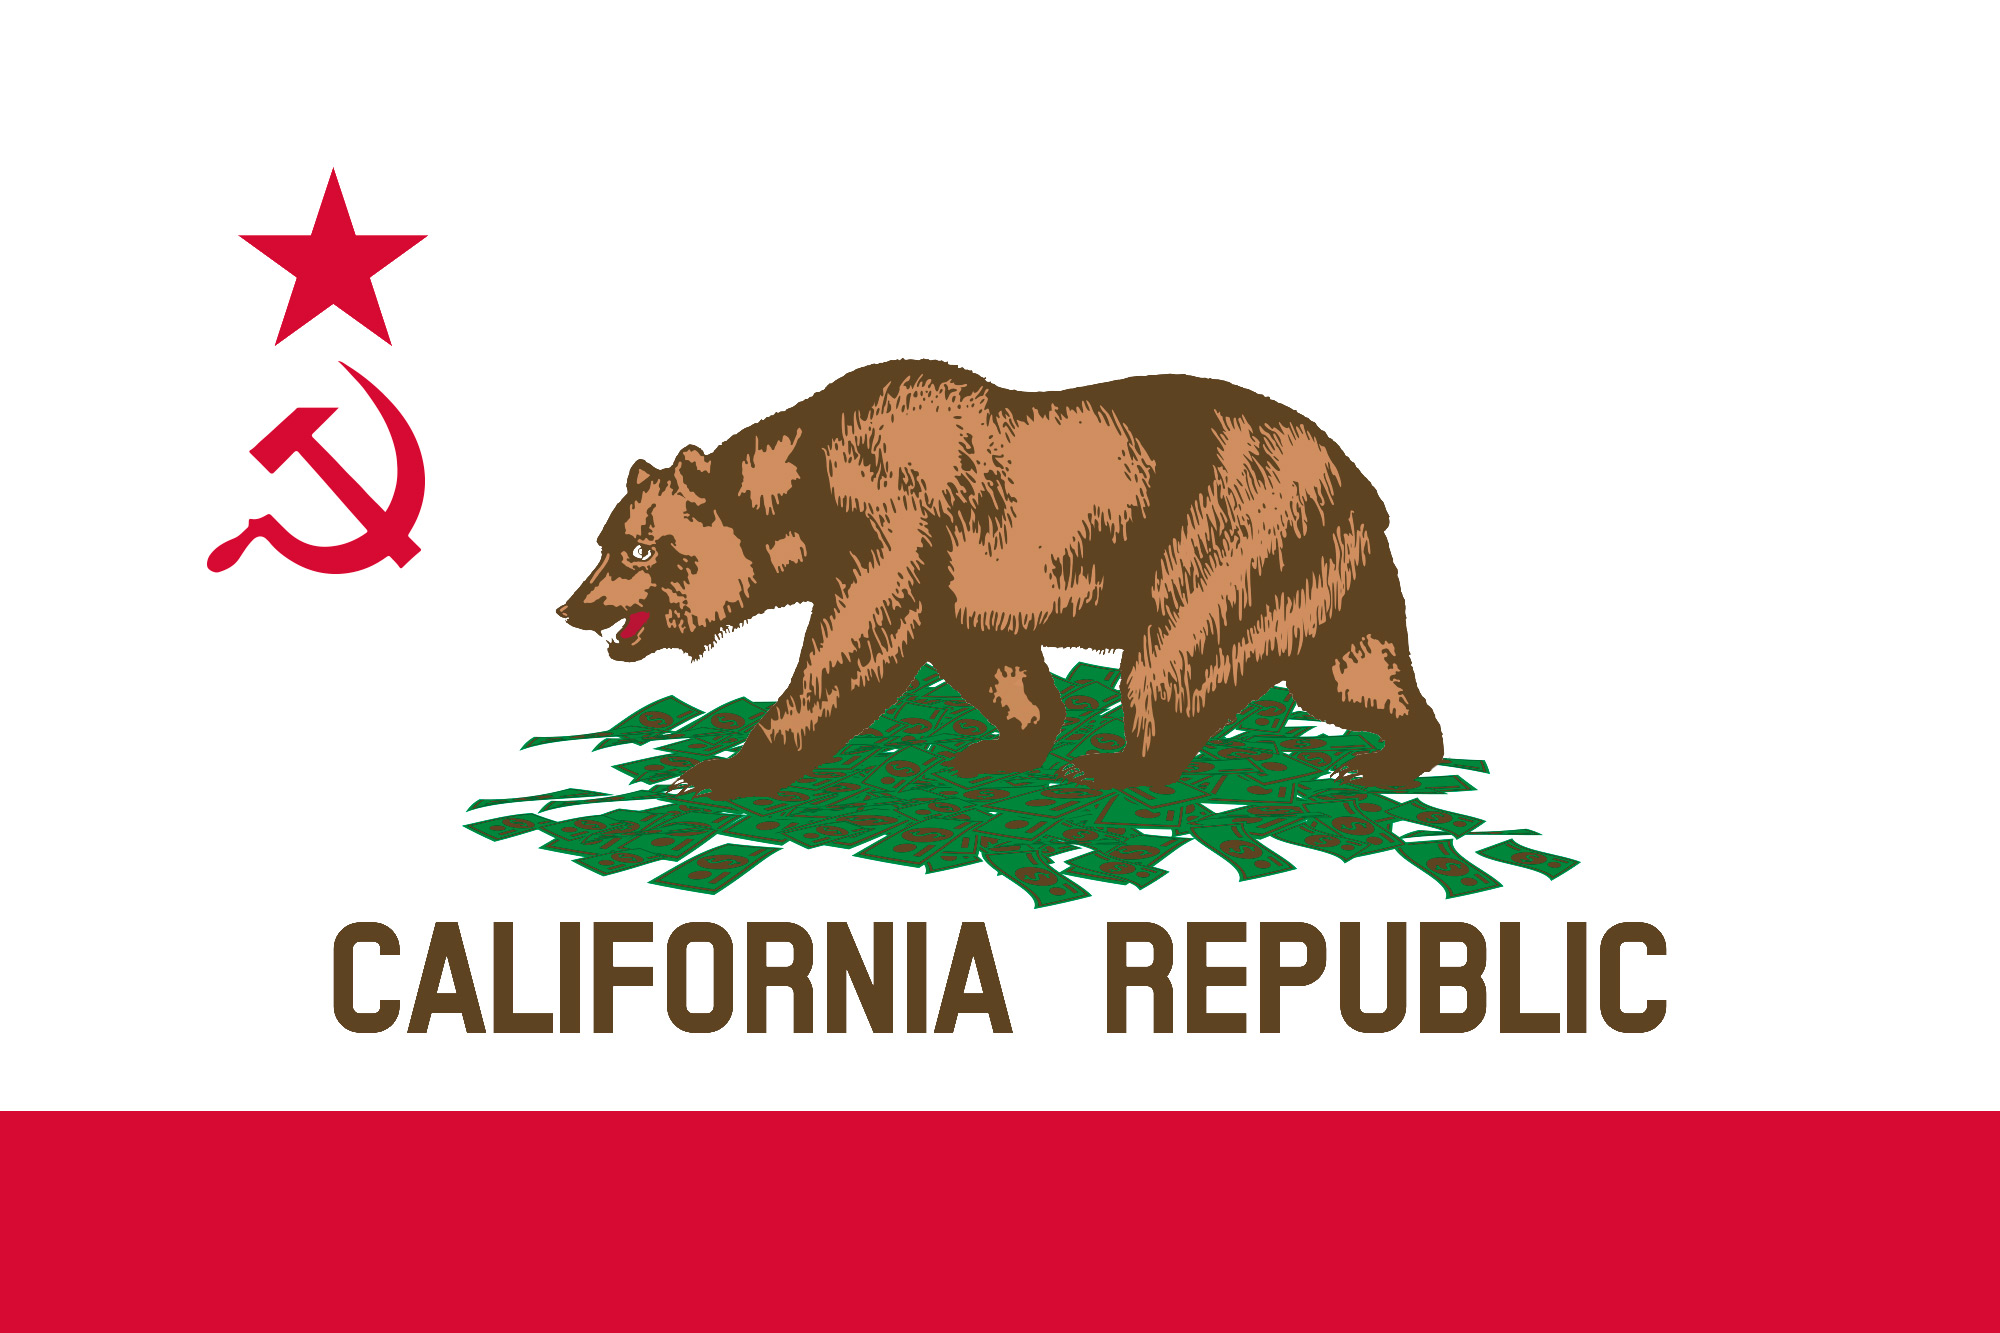 California-state-flag-communist-socialist-hammer-sickle-symbol-bear-pile-of-money.jpg